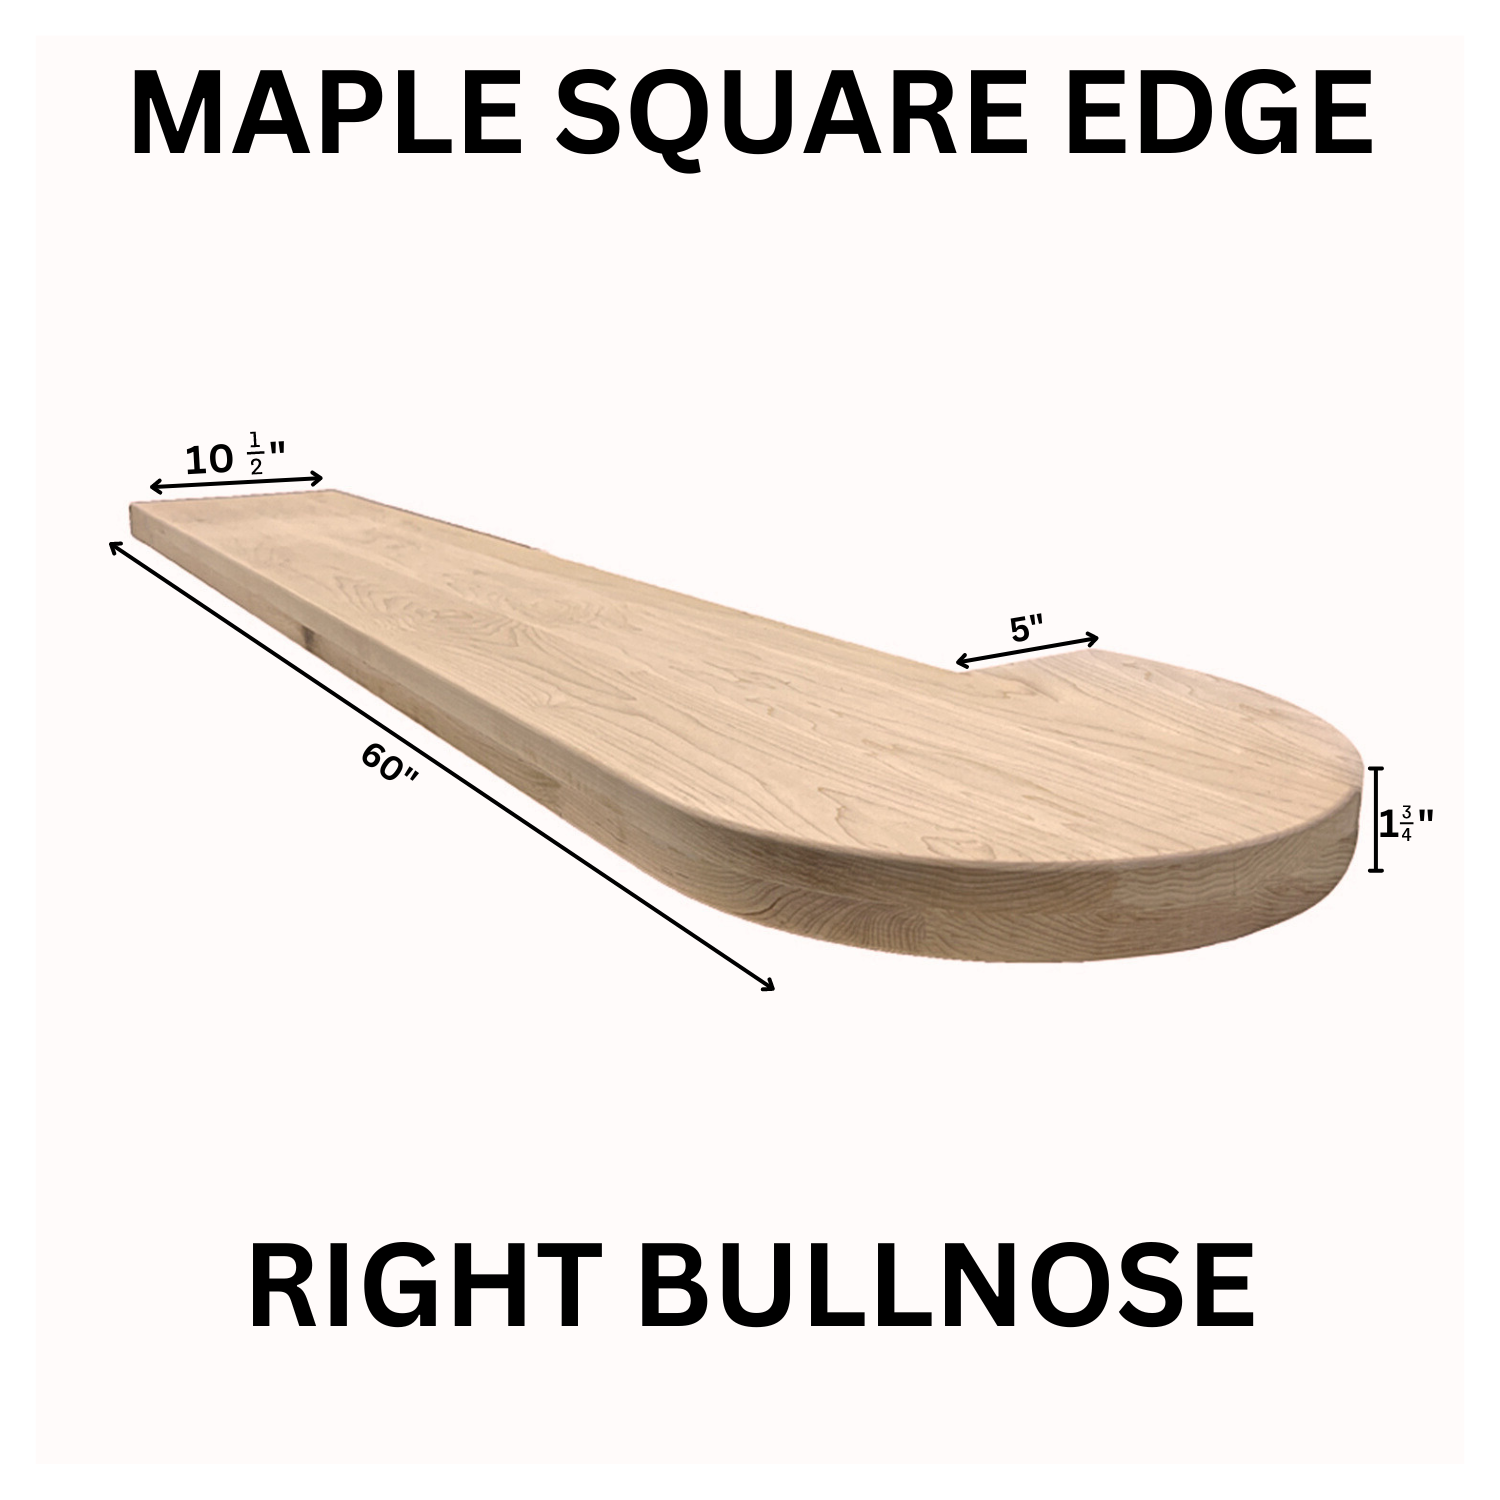 Maple Square Edge Tread Bullnose Right MSET-BR